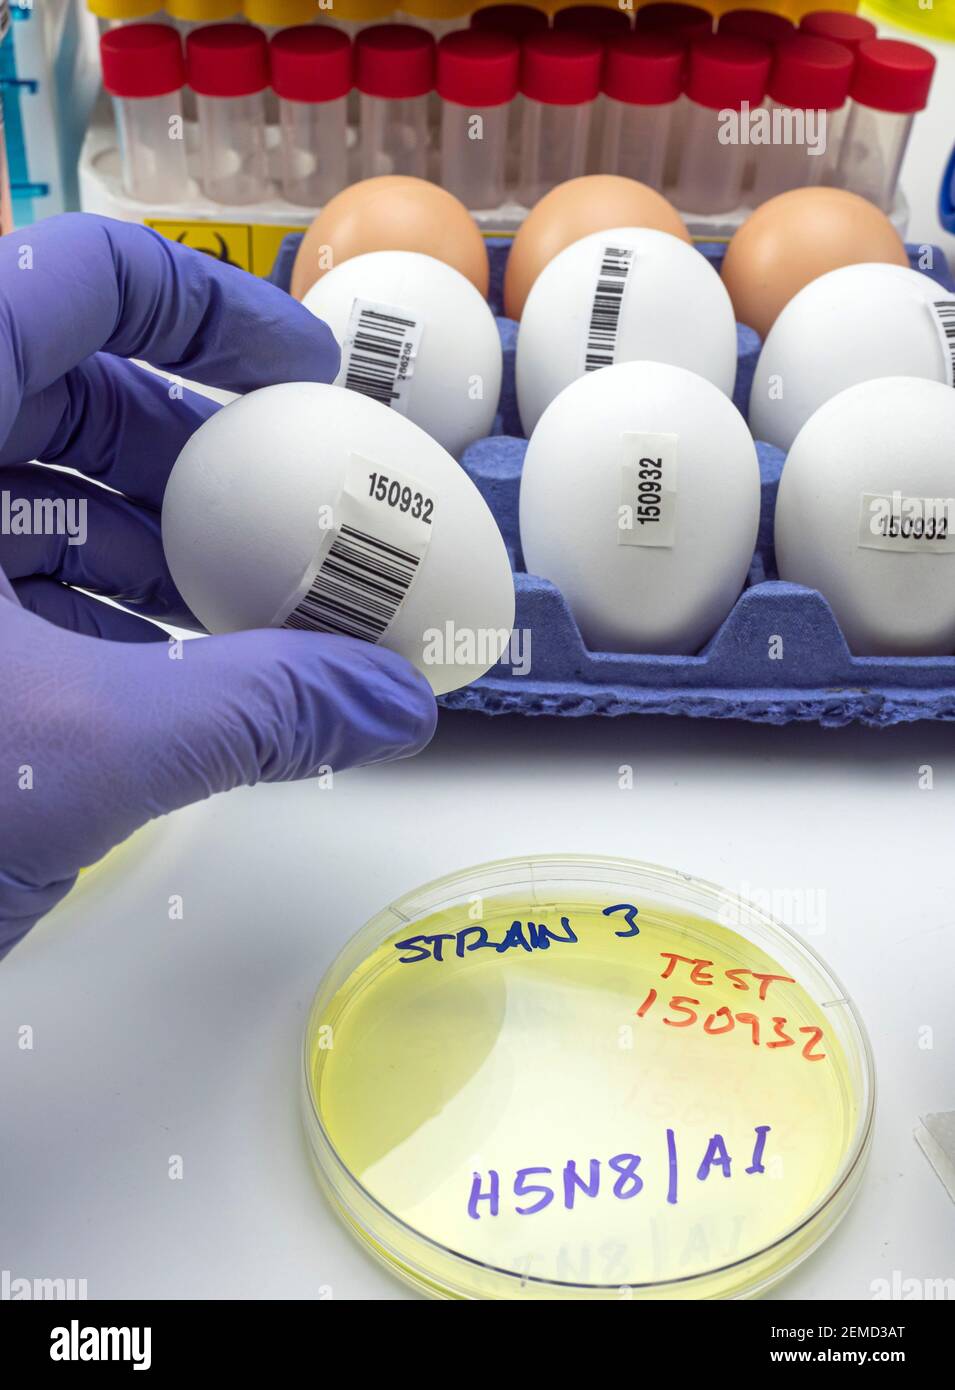 Nueva cepa H5N8 de influenza aviar diseminada en humanos, científico